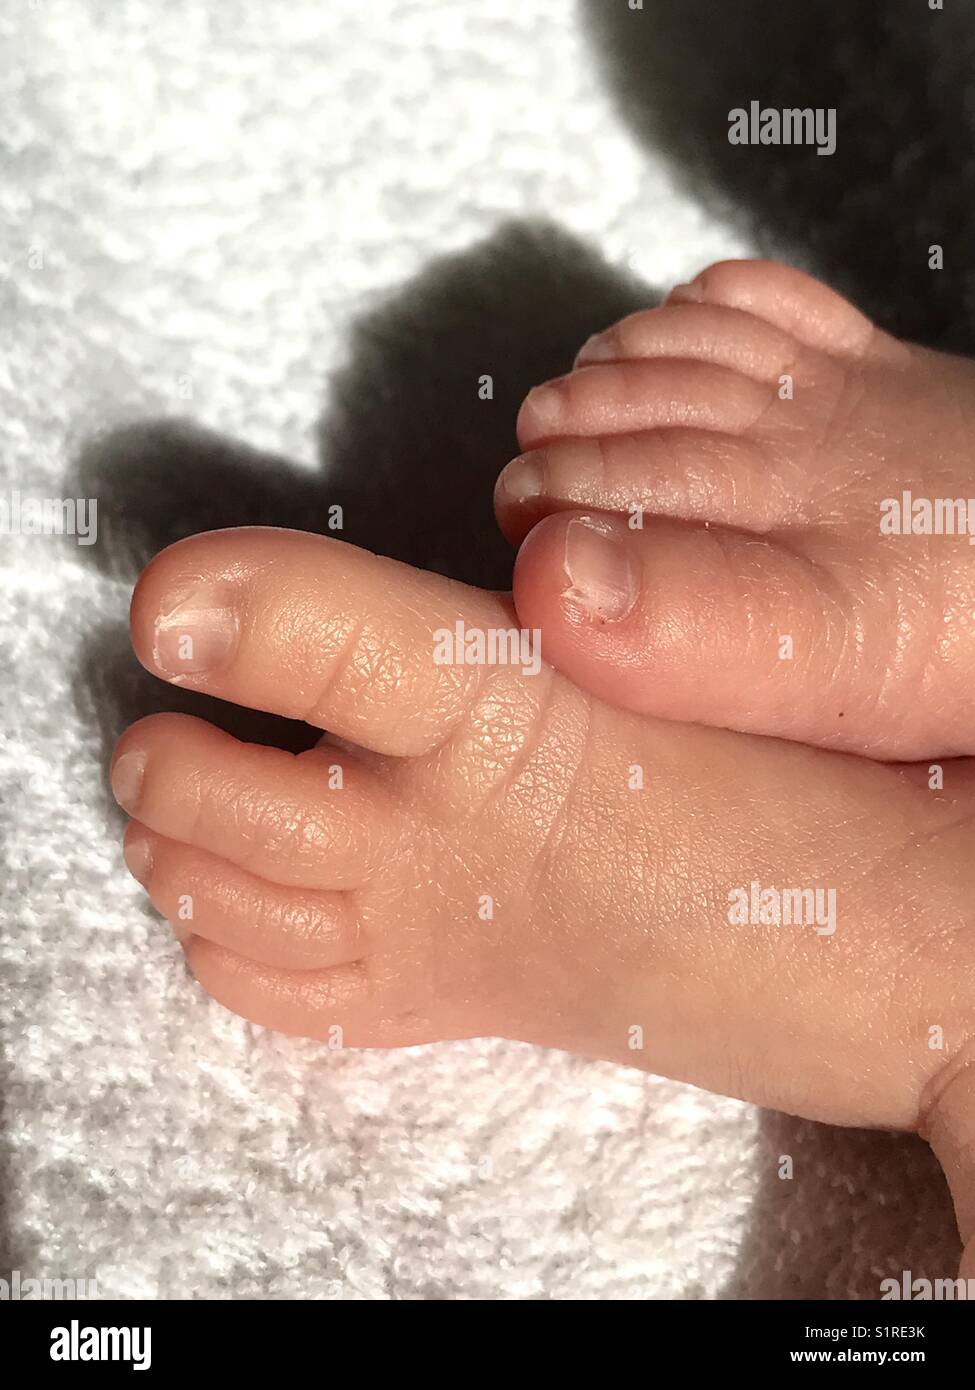 Los dedos de los pies y pies diminutos de un bebé recién nacido. Foto de stock